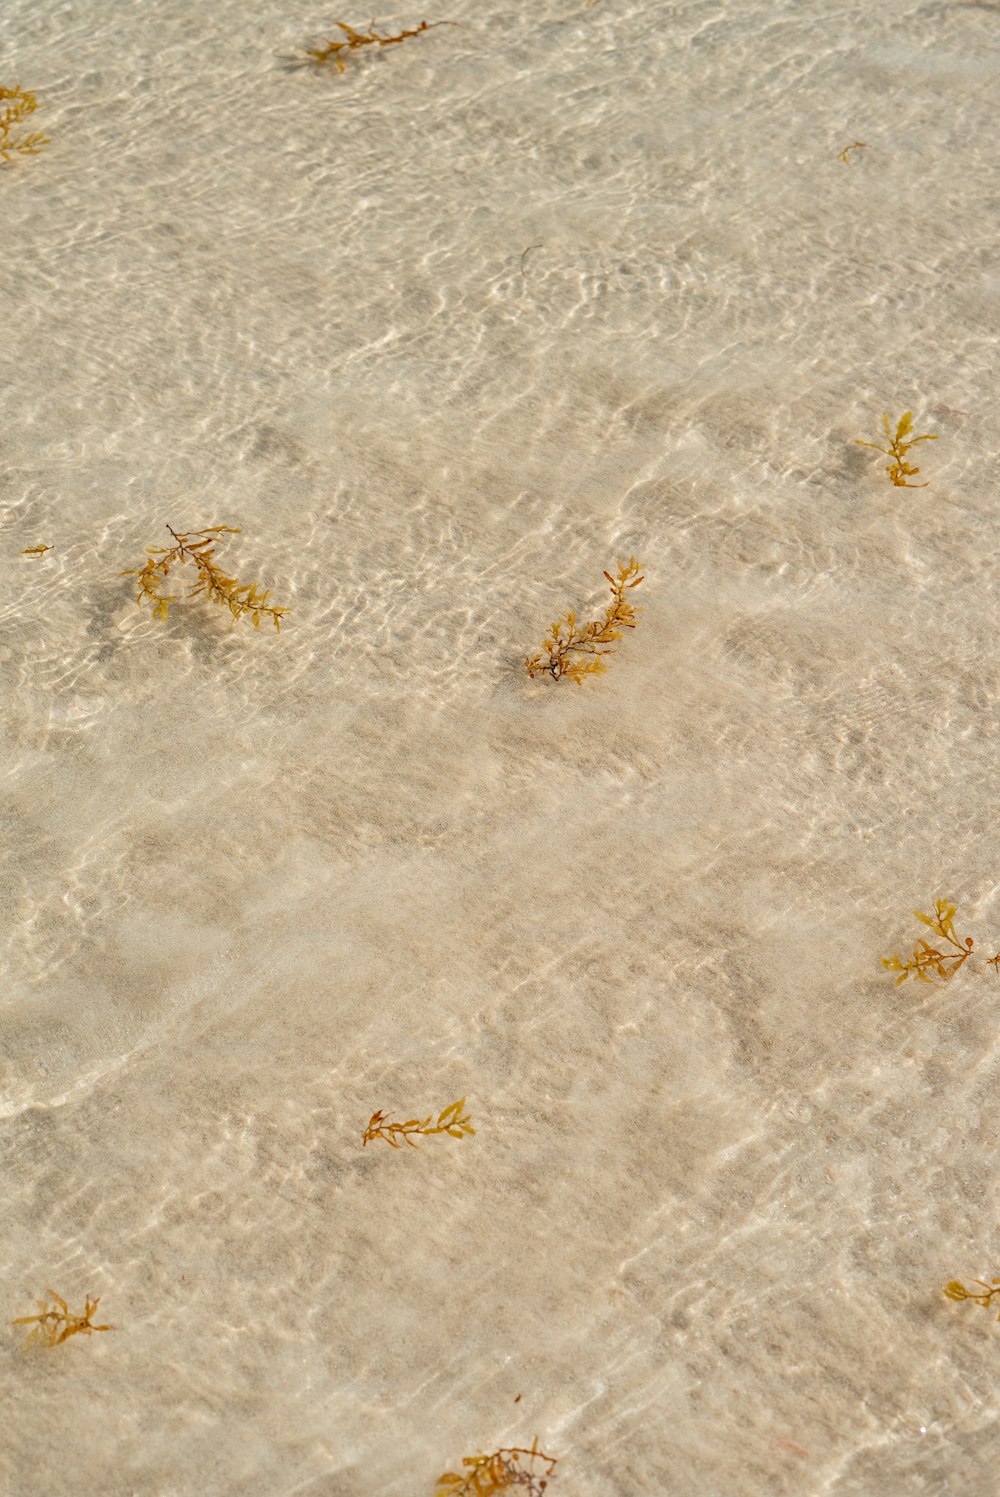 Un gruppo di alghe che galleggiano sulla cima di una spiaggia sabbiosa